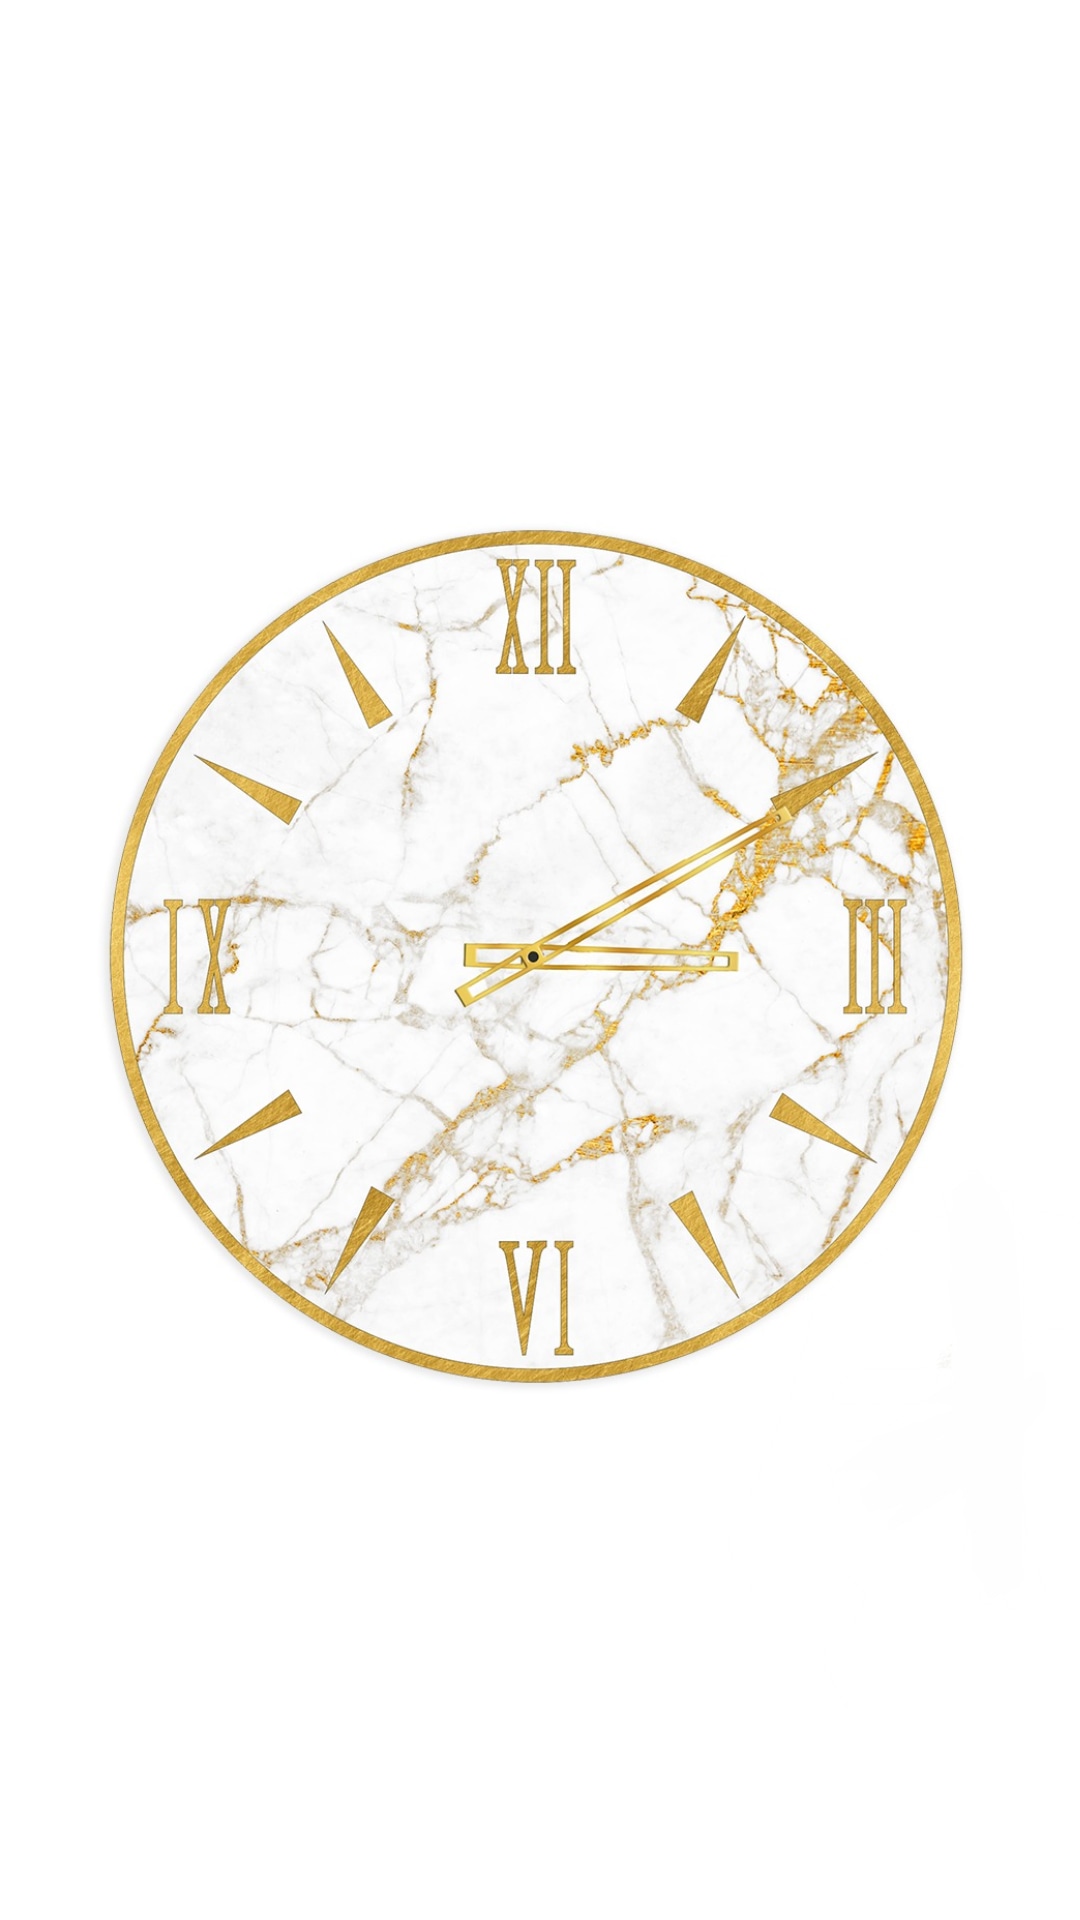 Orologio da Parete Moderno, 30x30 cm, effetto marmo bianco e oro.